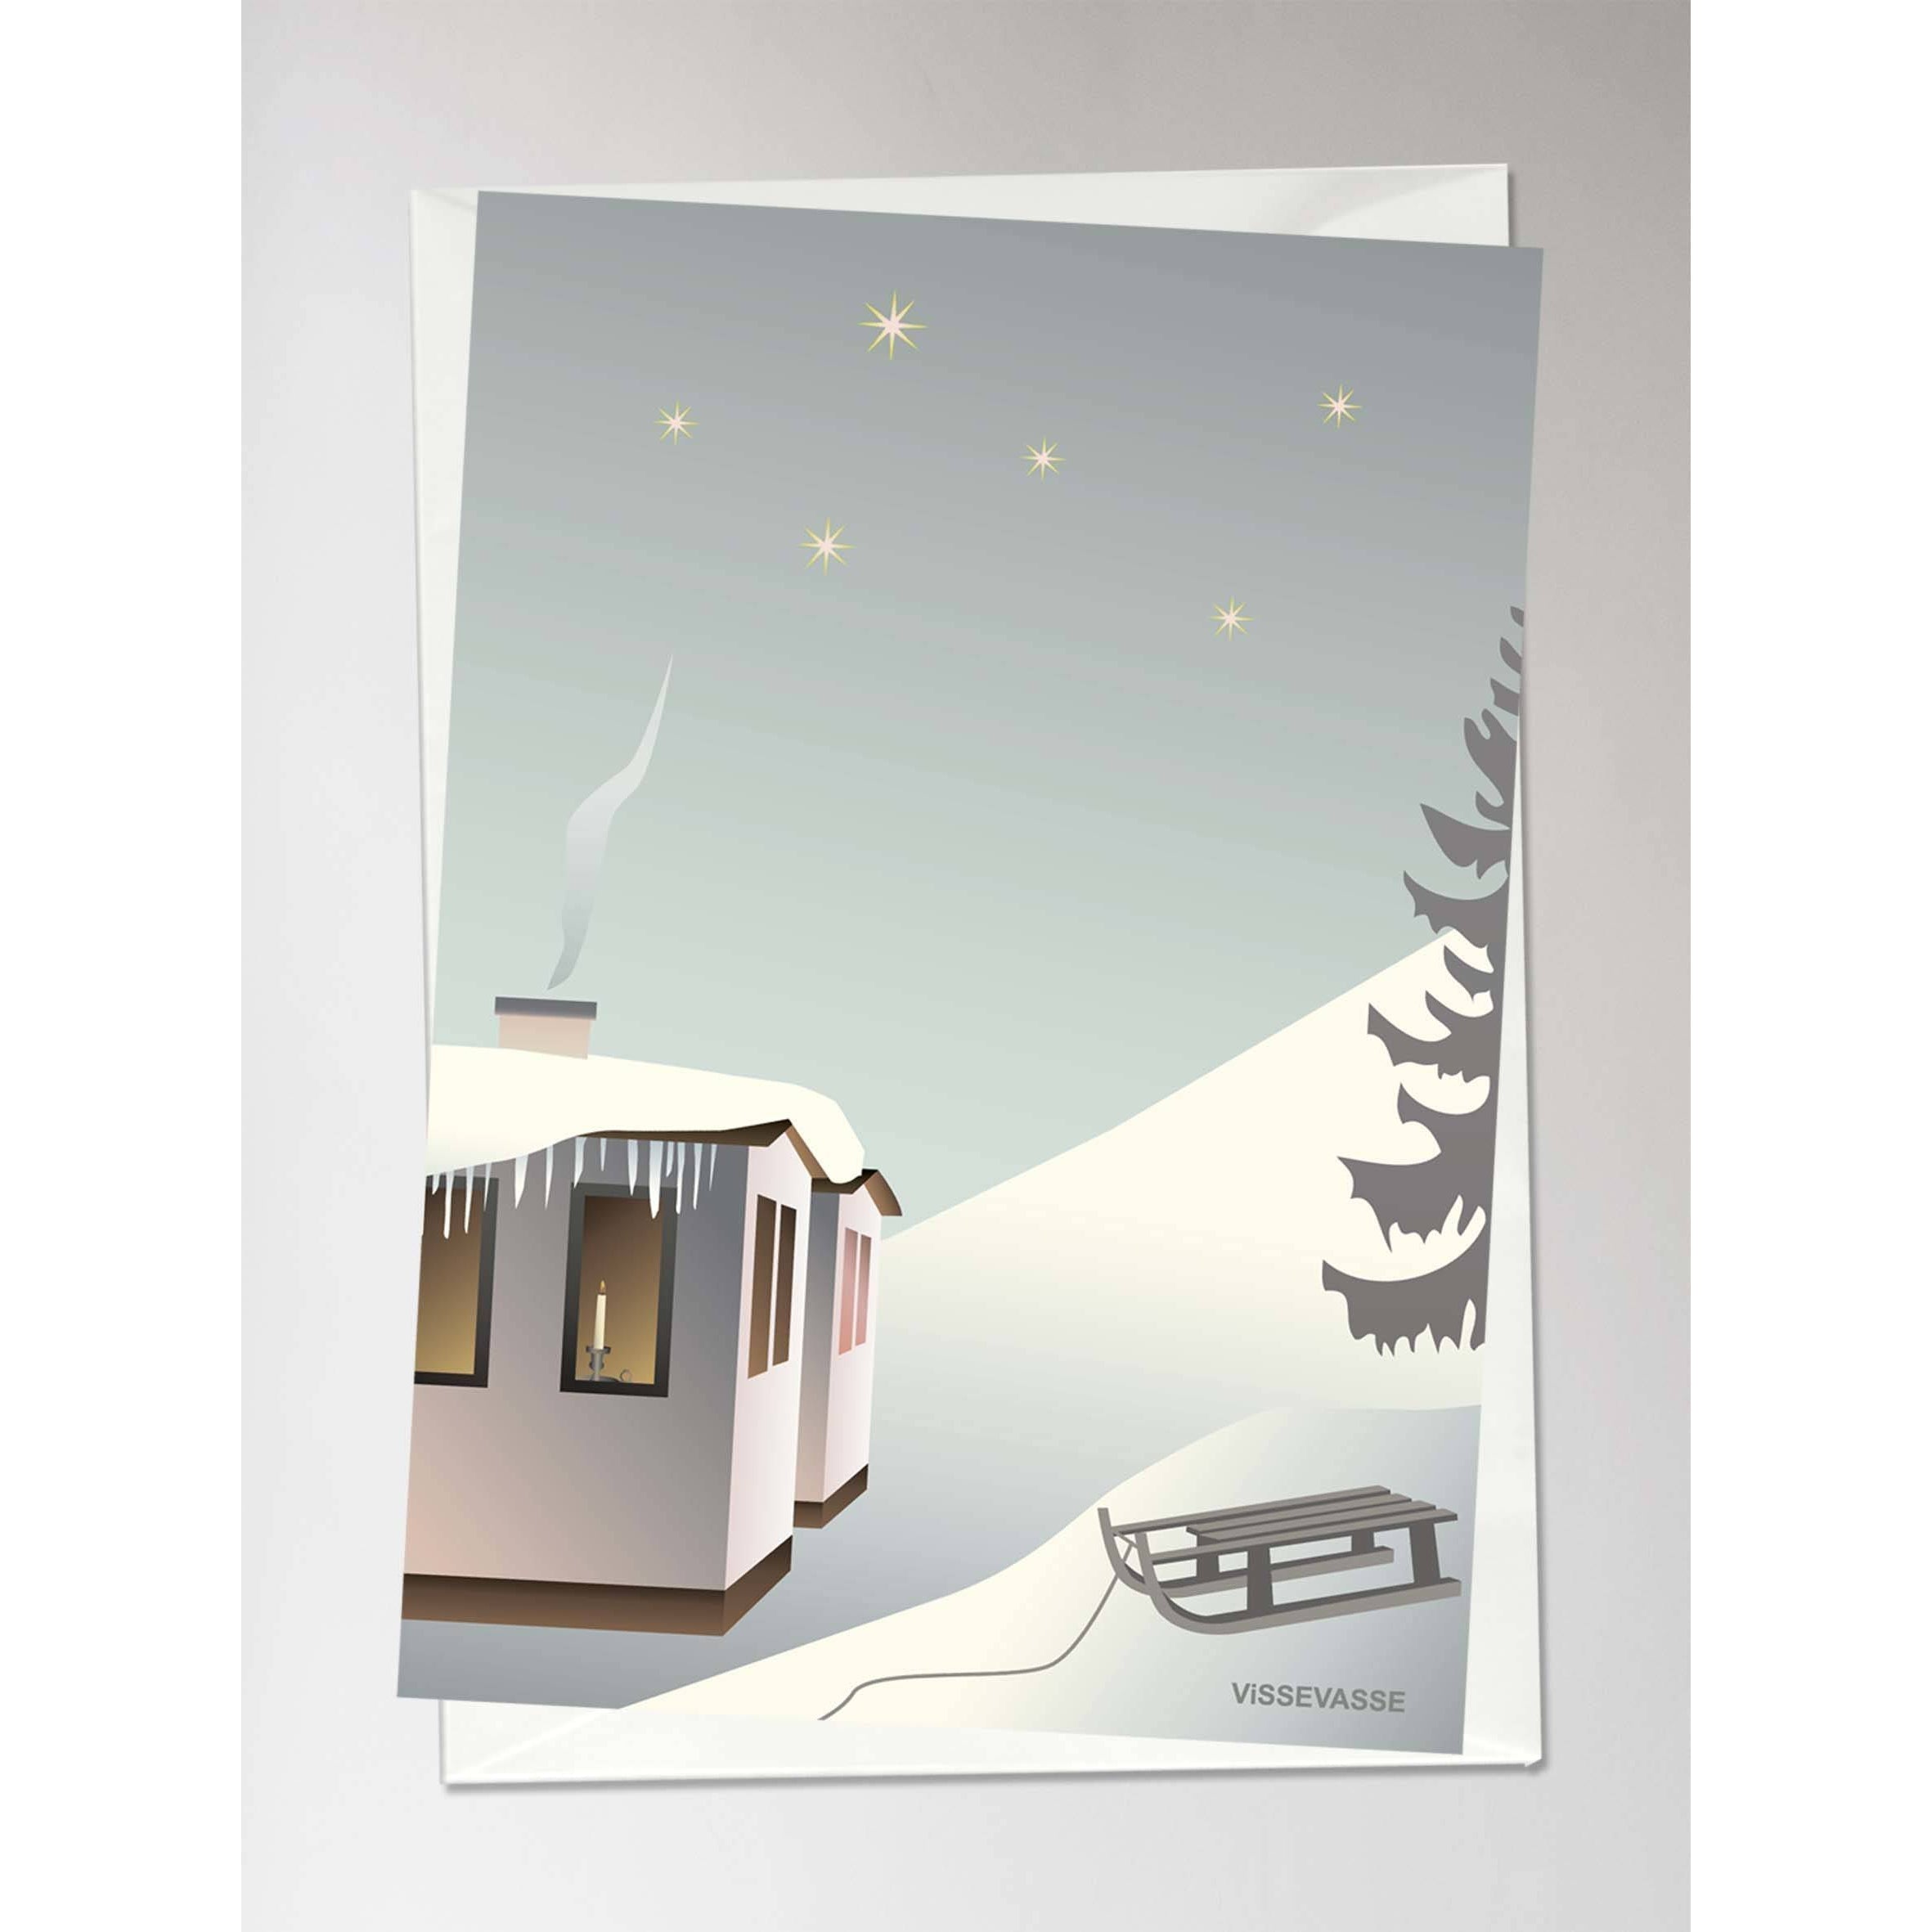 Trineo de Vissevasse en la tarjeta de felicitación de nieve, 10,5x15 cm